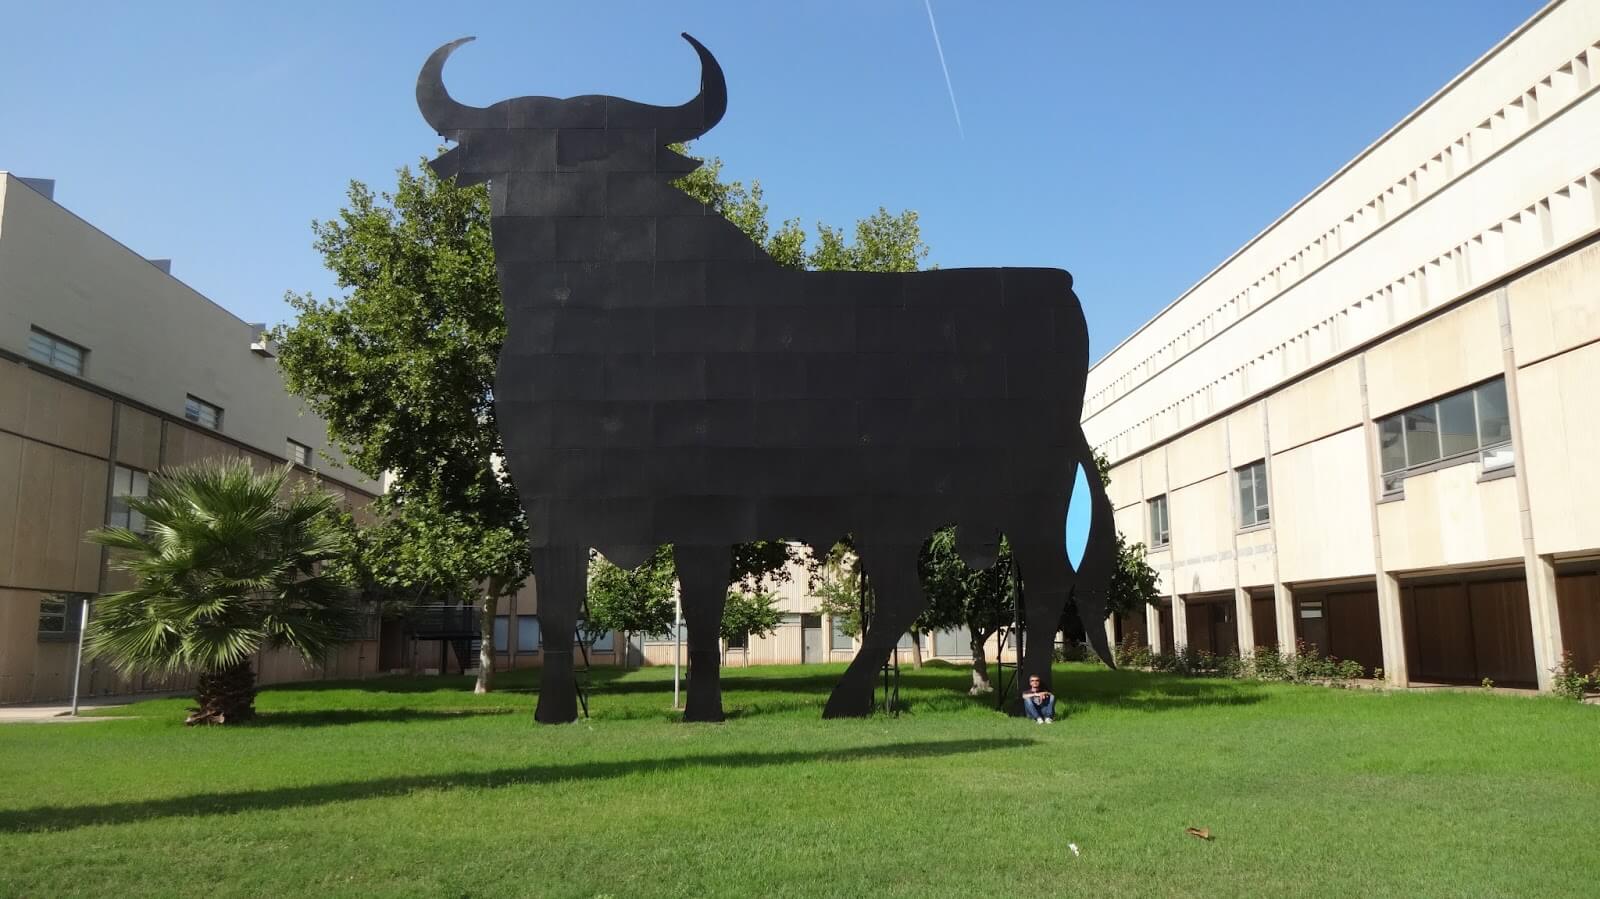 Какое отношение имеет рекламный символ спиртного напитка Osborne к Политехническому университету Валенсии? Что делает бык на территории валенсийского политеха?